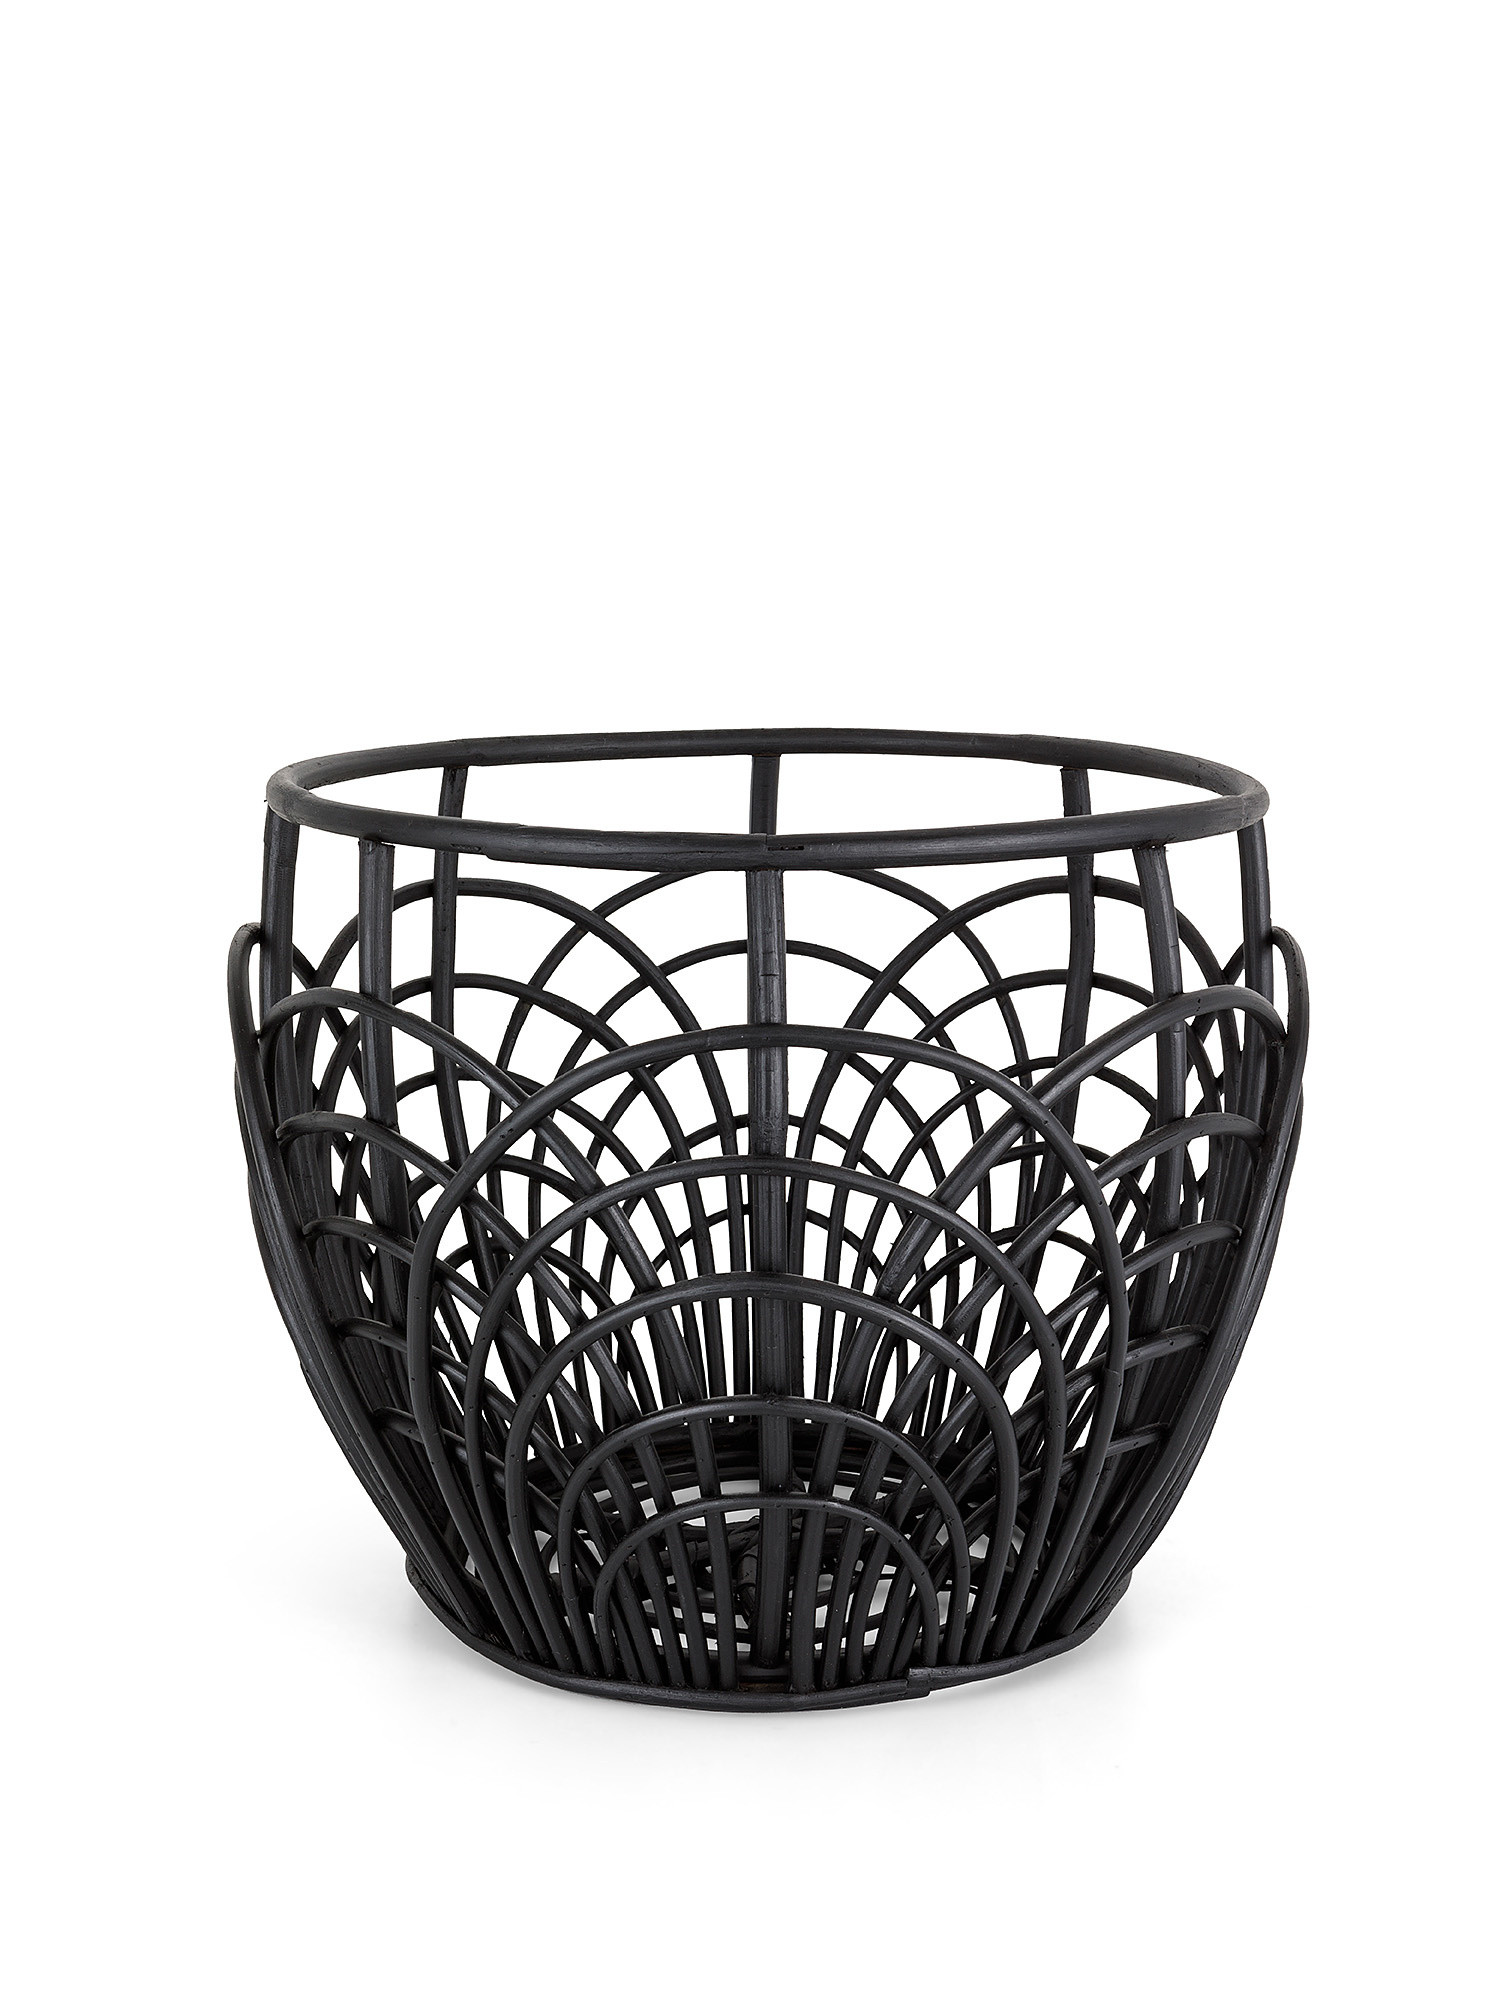 Hand woven rattan basket, Black, large image number 0